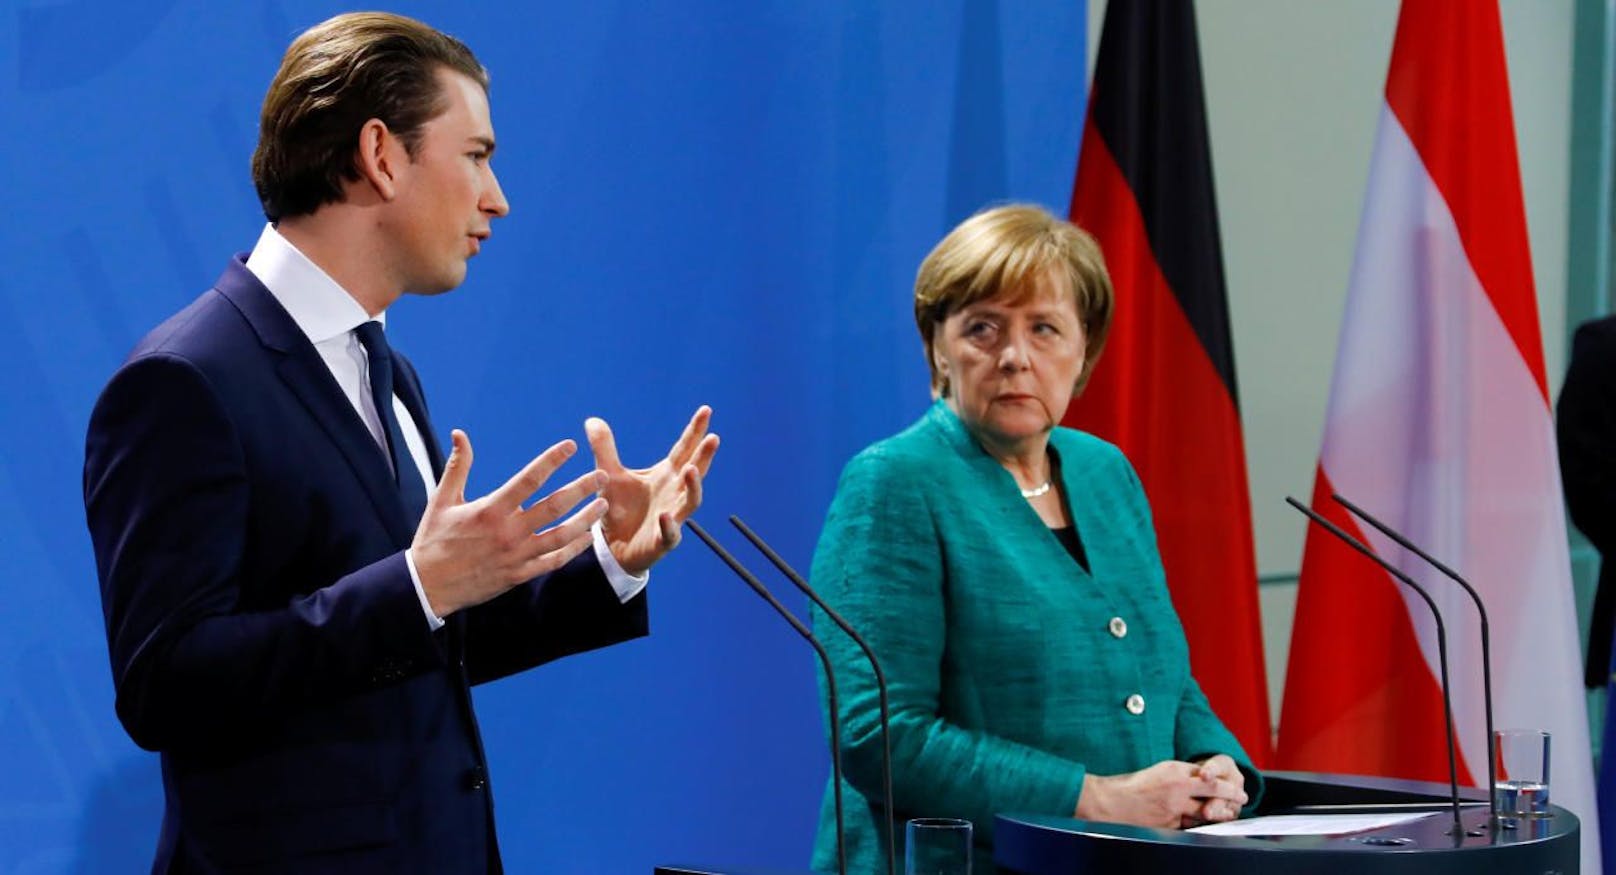 Bundeskanzler Sebastian Kurz (ÖVP) bei seinem Antrittsbesuch bei Deutschlands Kanzlerin Angela Merkel